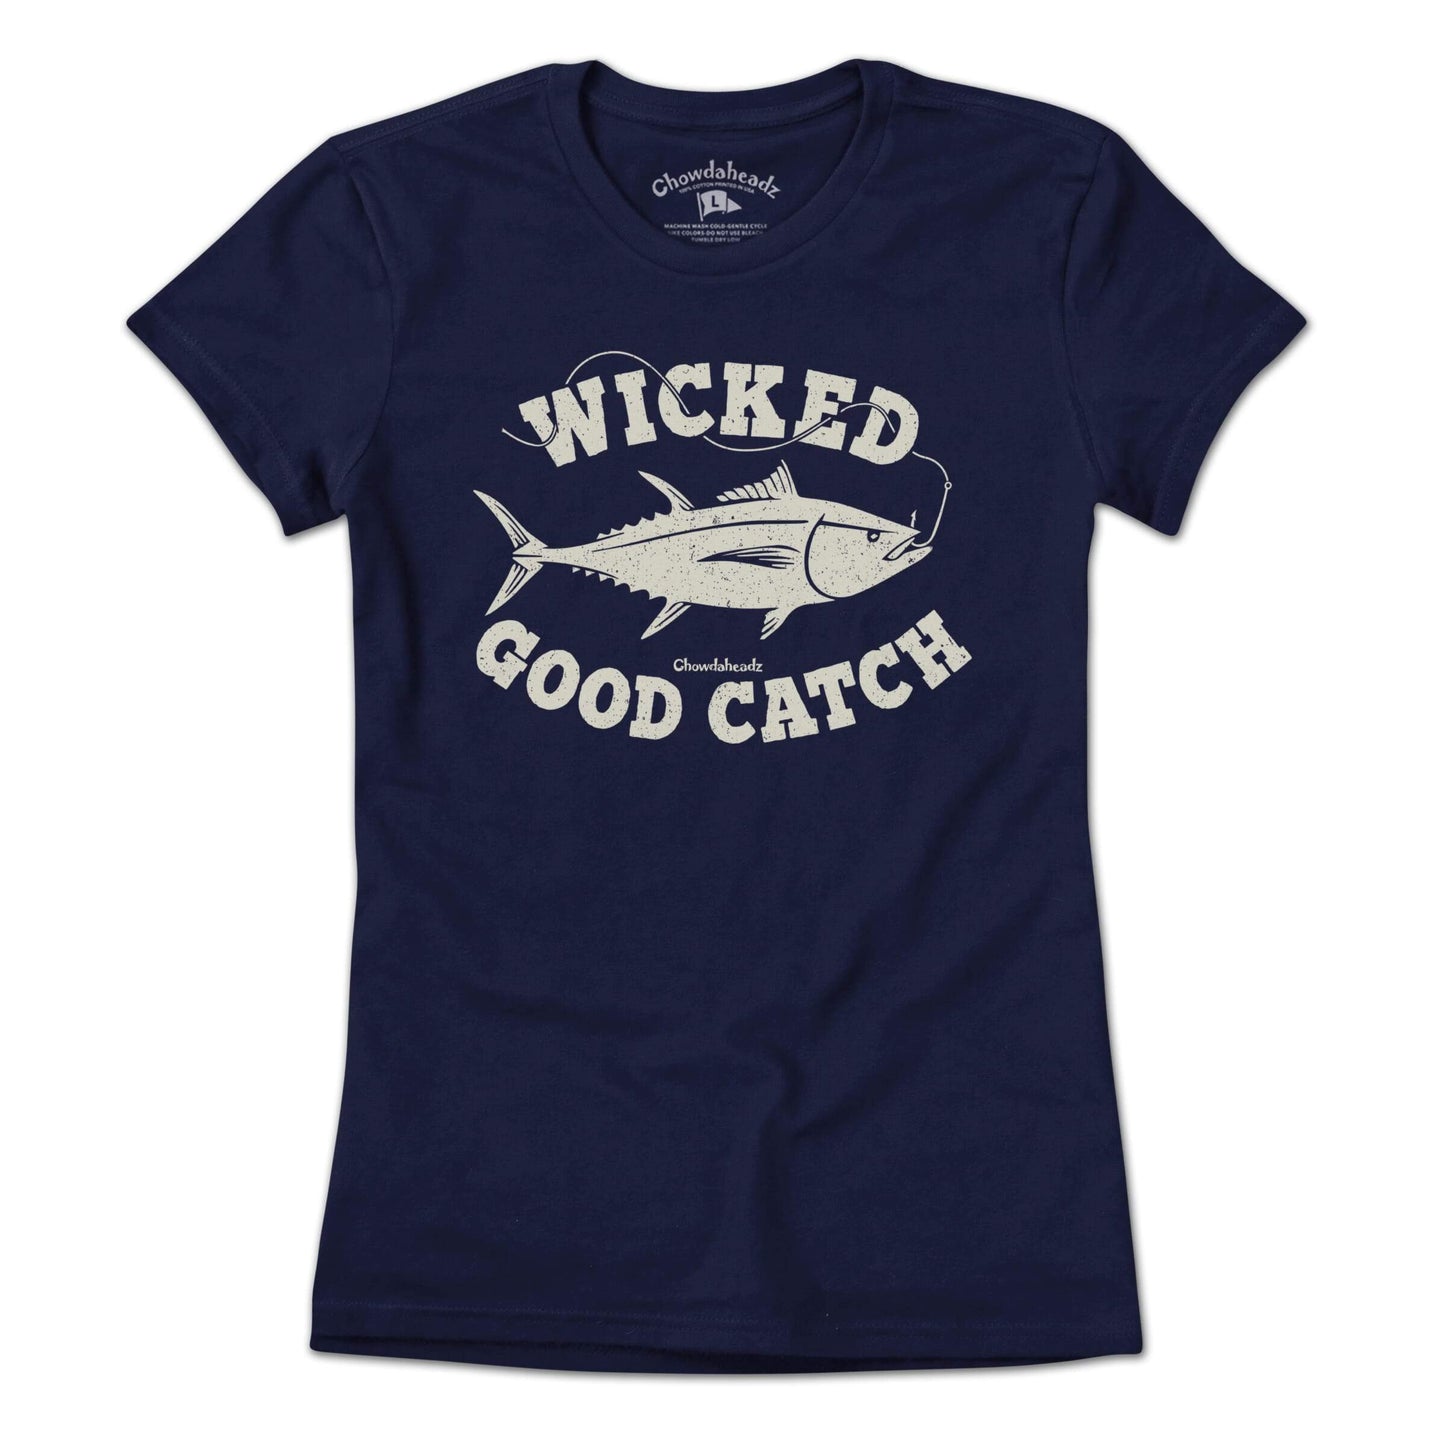 Wicked Good Catch T-Shirt - Chowdaheadz